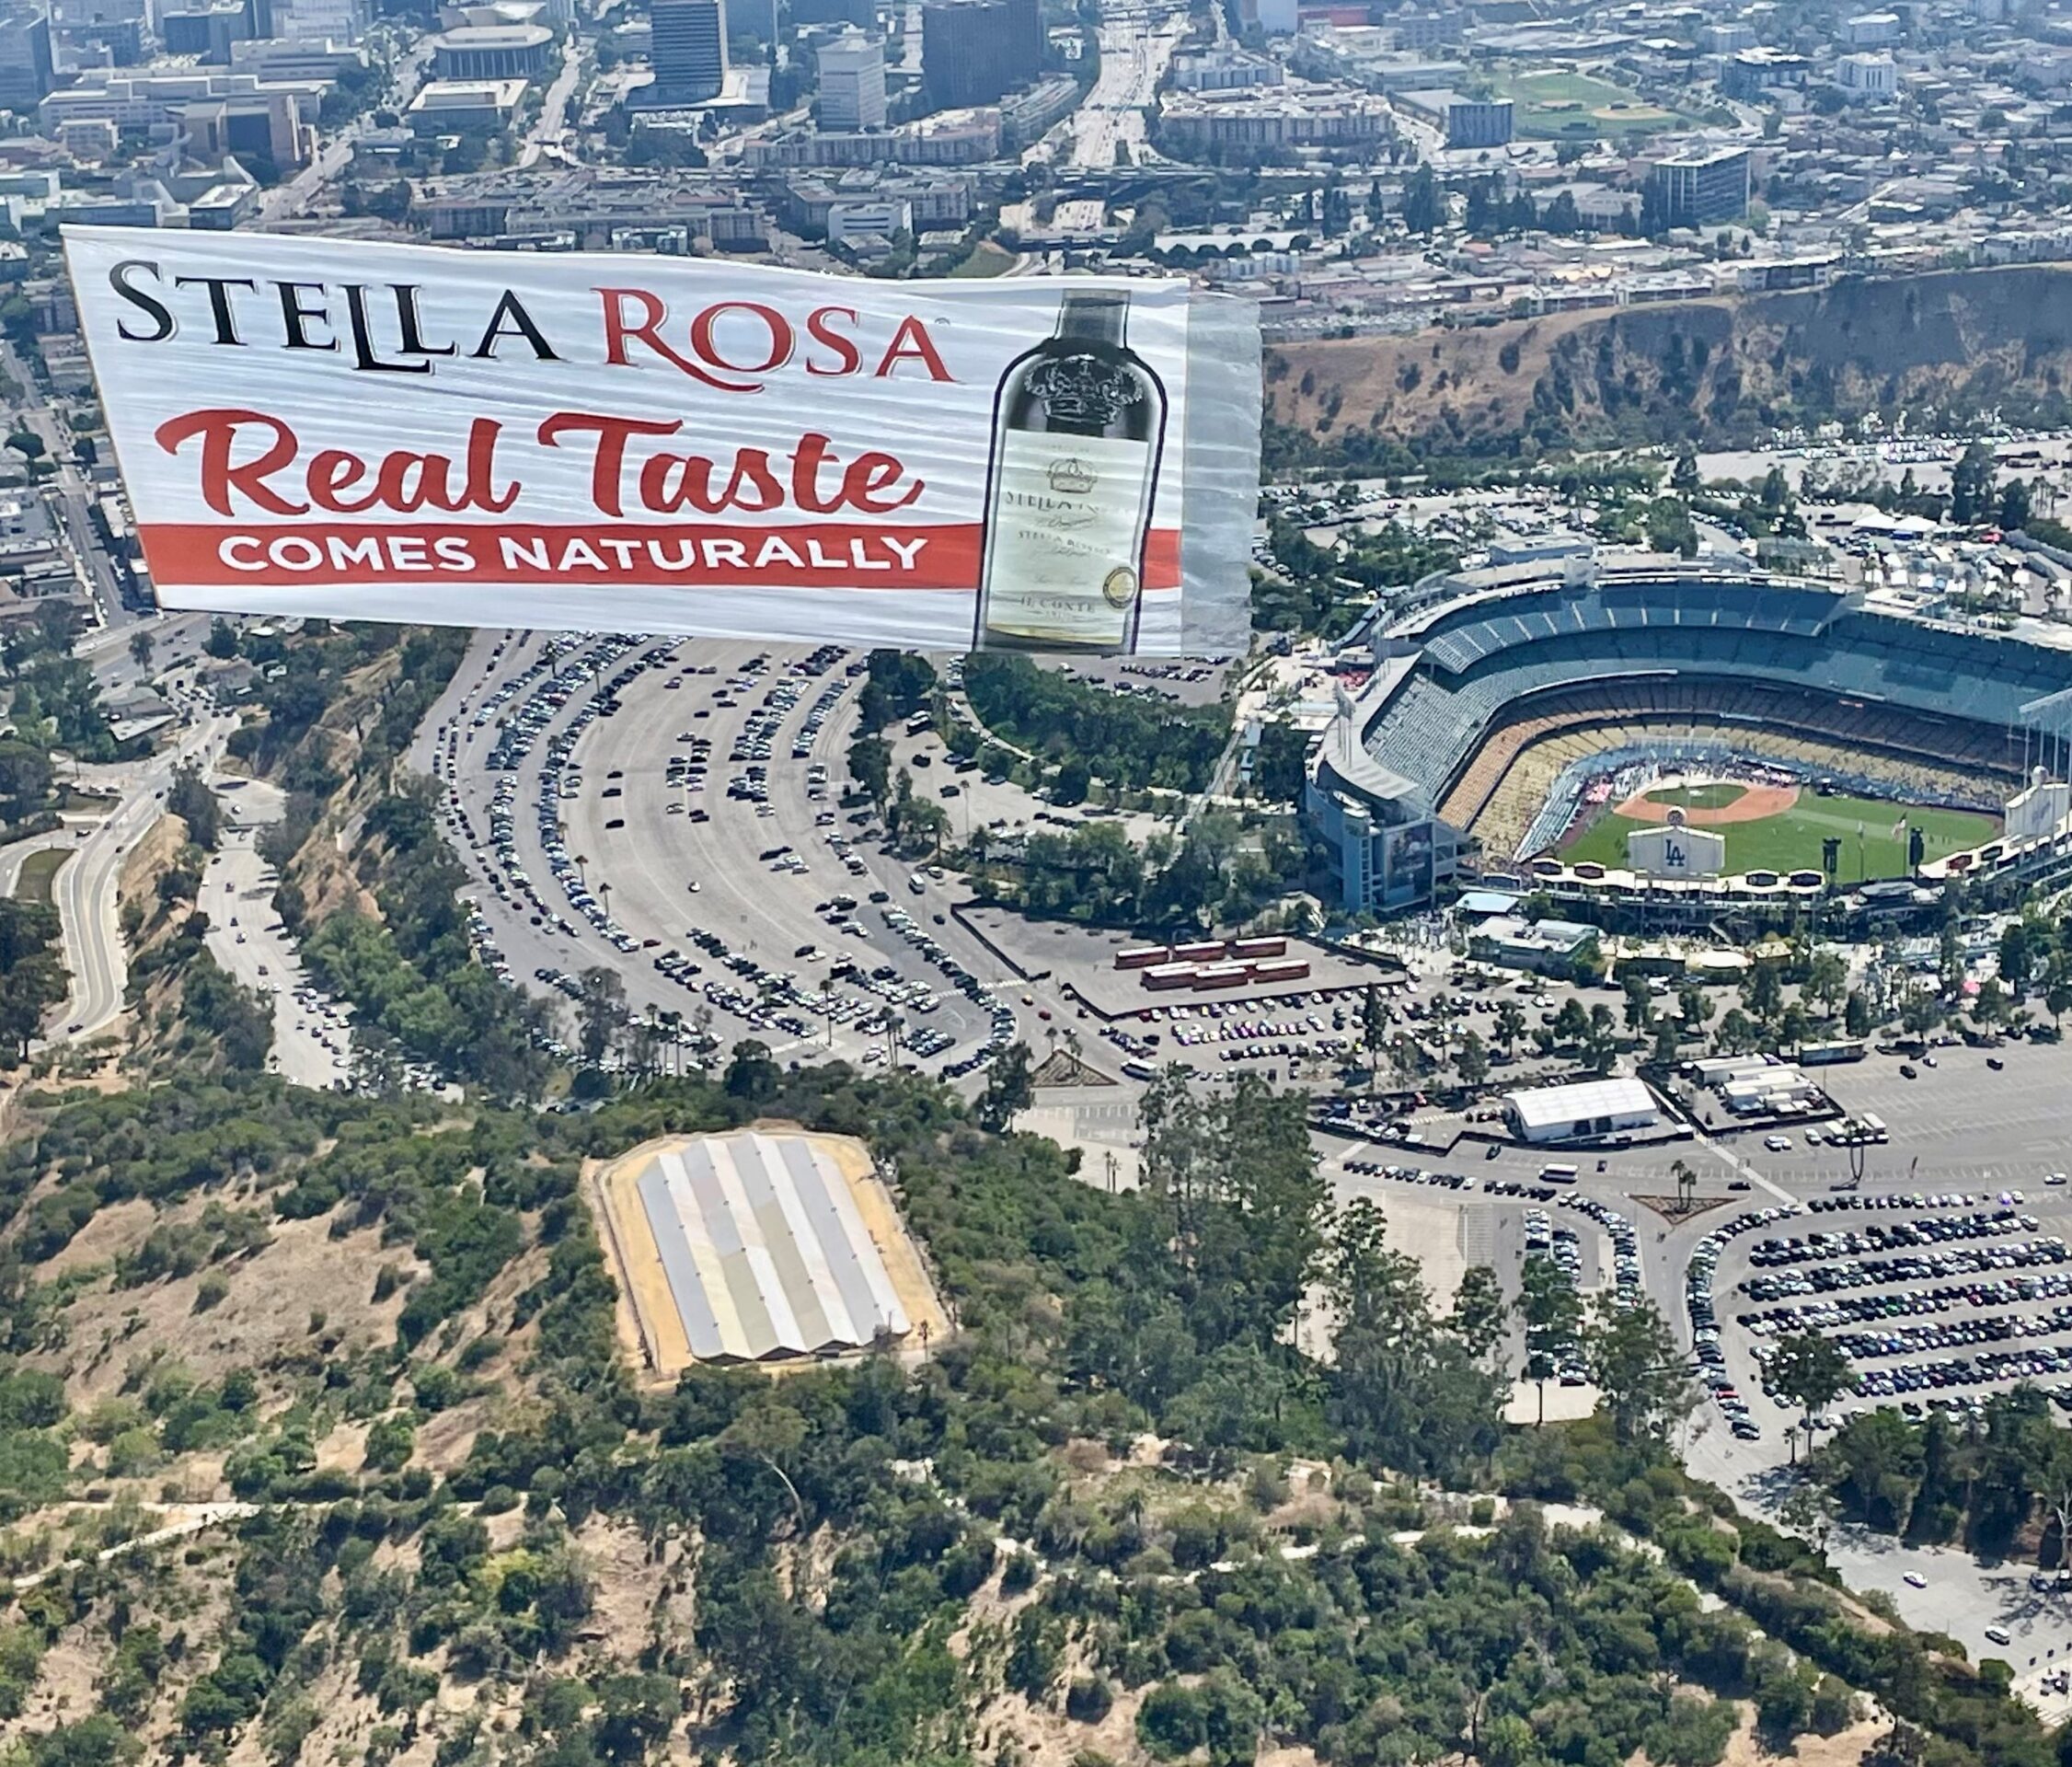 Stella Rosa Aerial Billboards Dodgers All Star